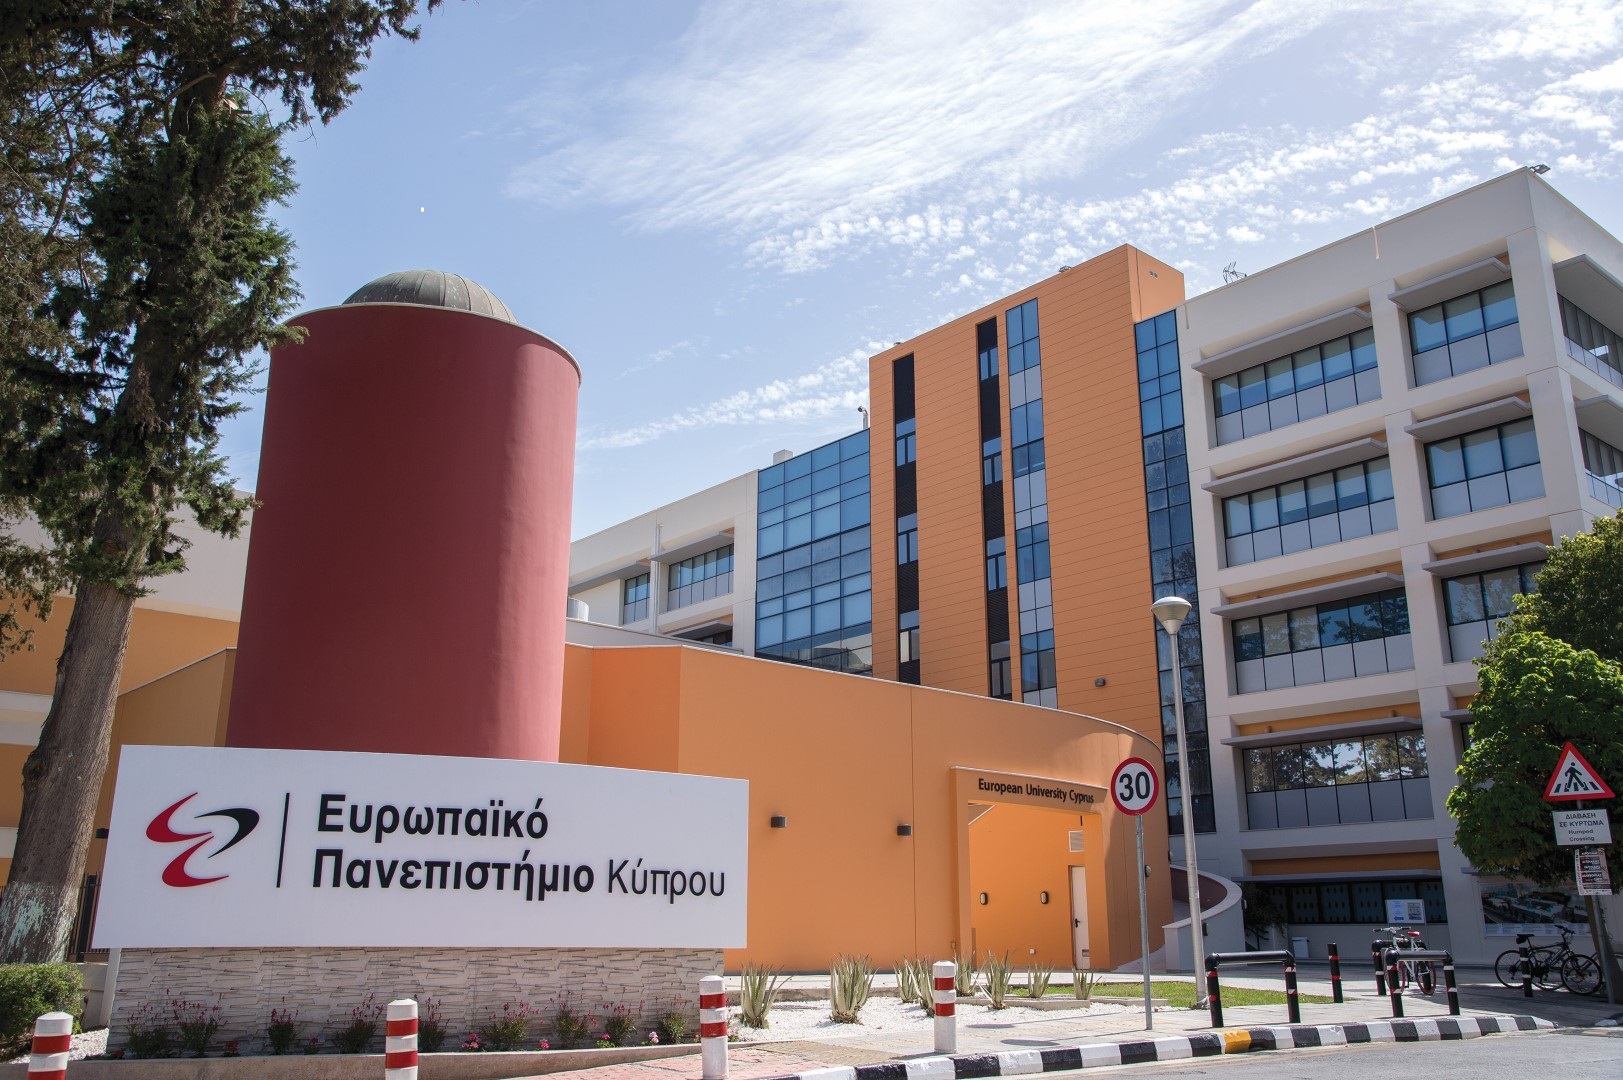 Επίσκεψη-ξενάγηση στην Πανεπιστημιούπολη του Ευρωπαϊκού Πανεπιστημίου Κύπρου